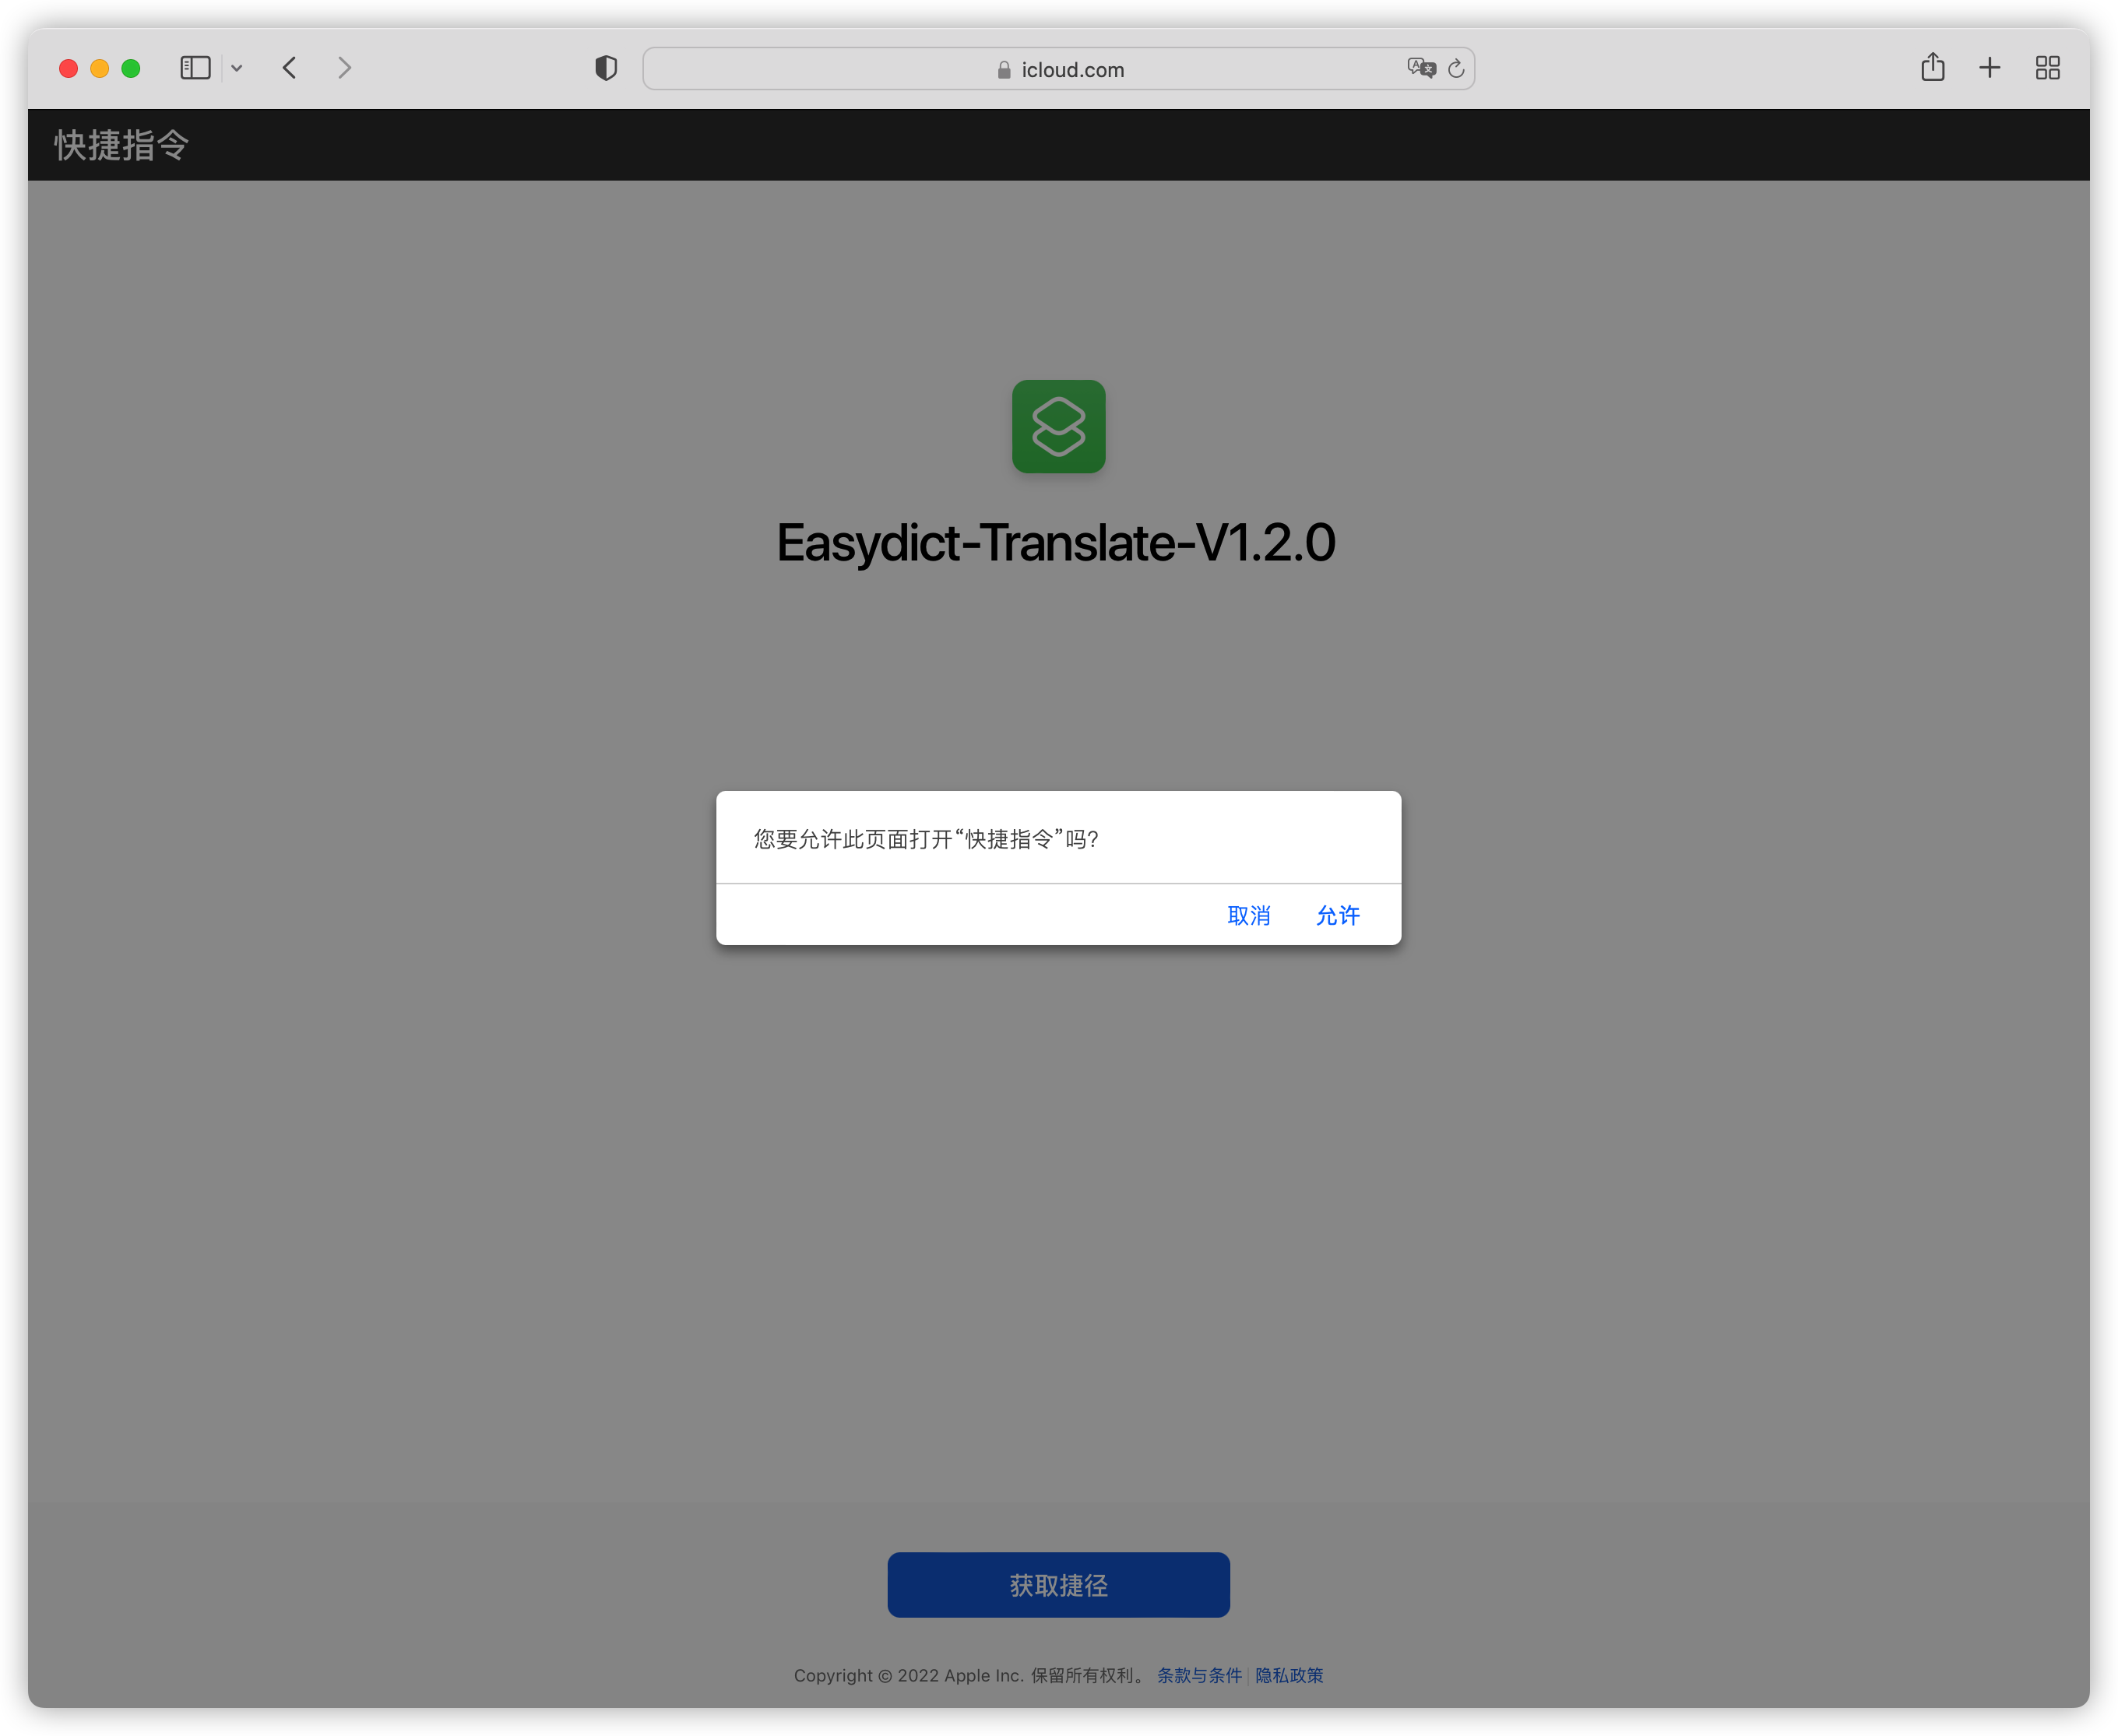 Easydict-Translate-V1.2.0